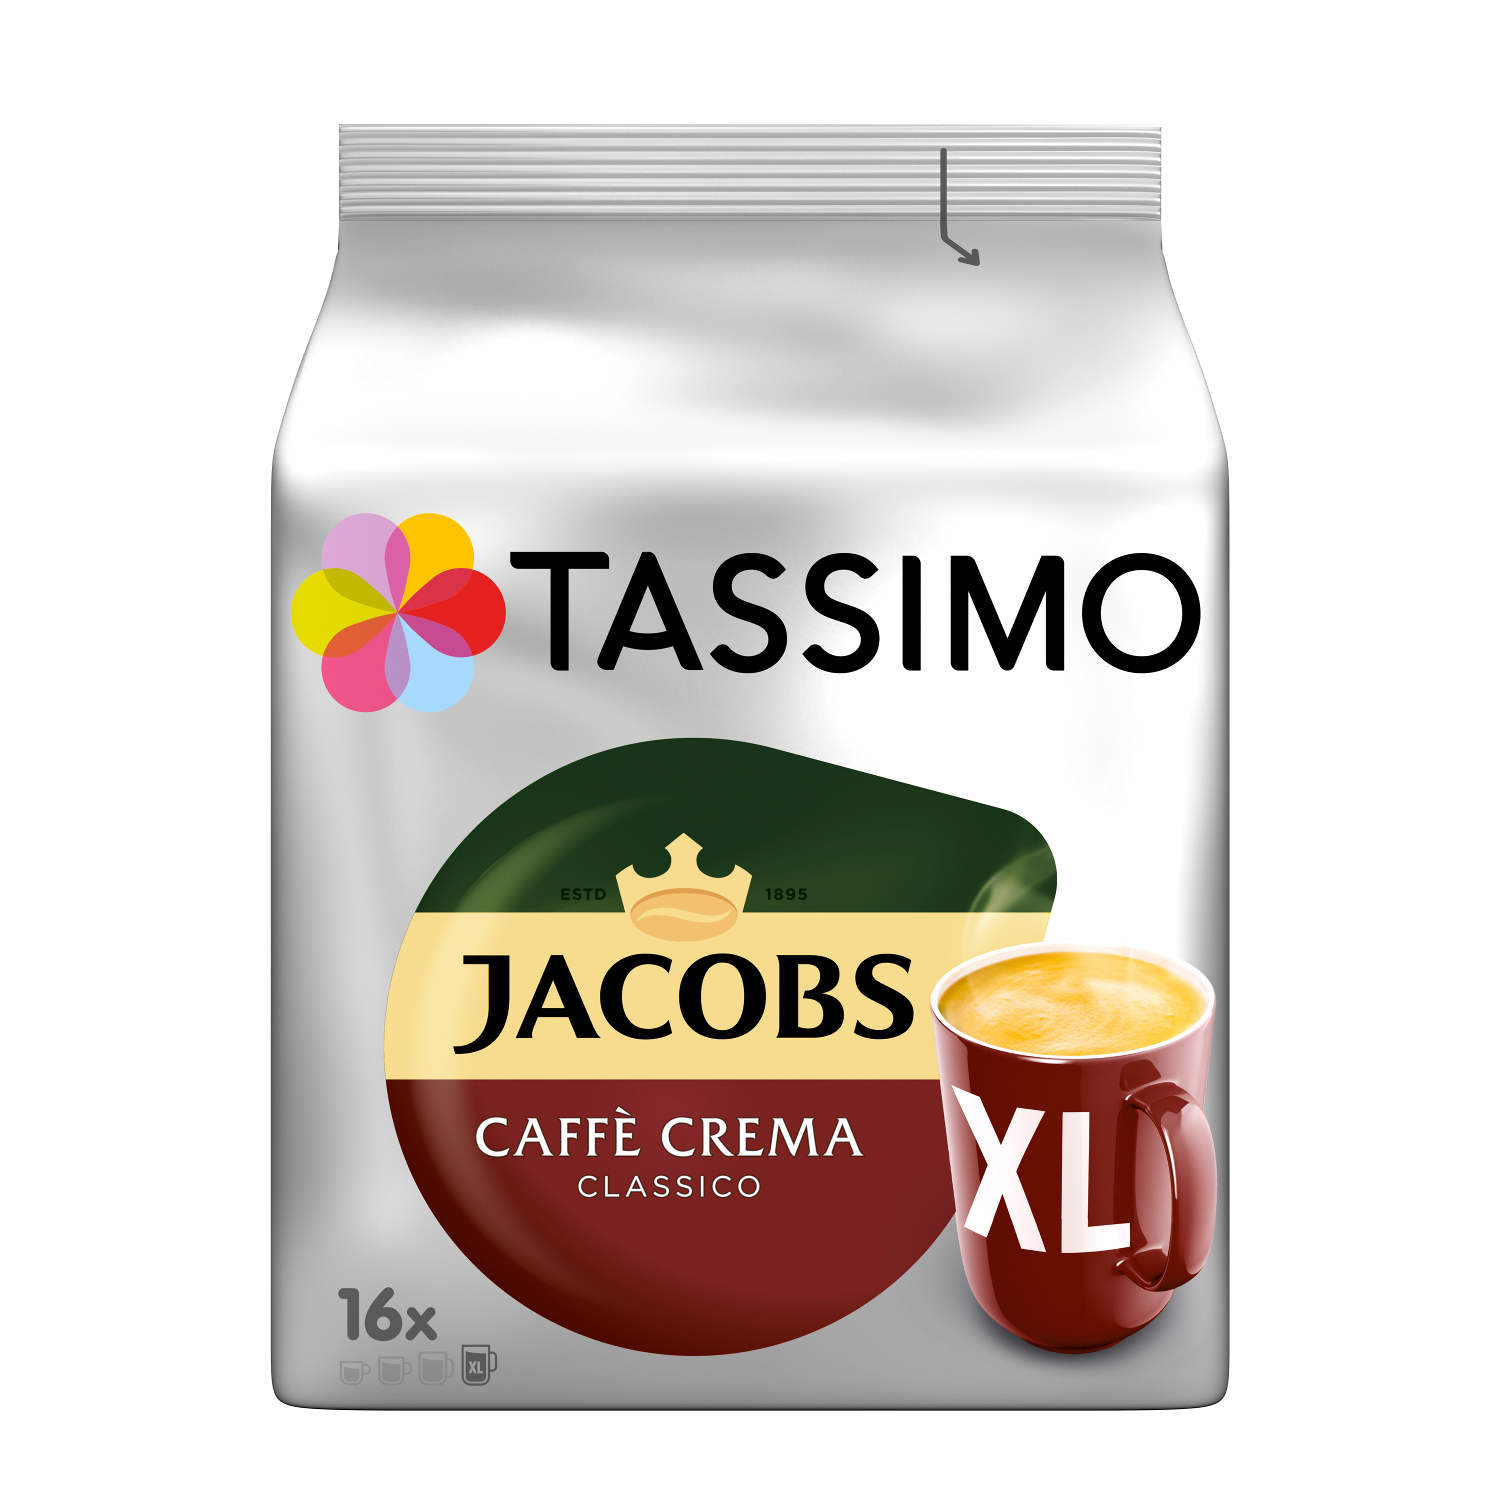 TASSIMO Vielfaltspaket Becherportionen Crema 5 System)) Sorten Kaffeekapseln Maschine (T-Disc (Tassimo Intenso Mild Café Morning XL Krönung